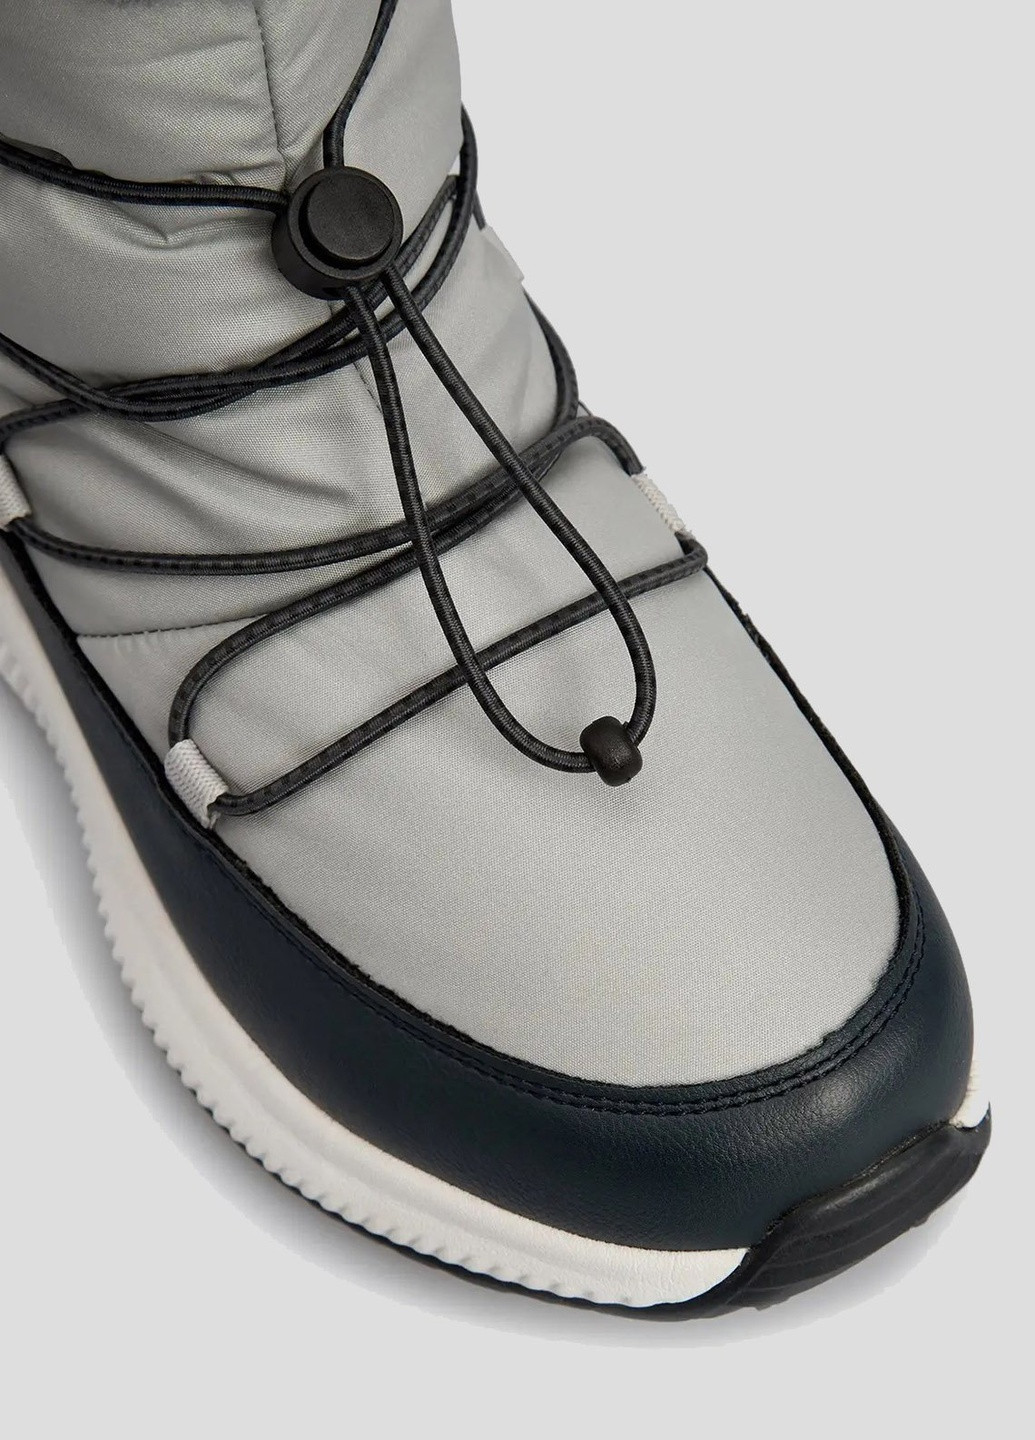 Осенние серые ботинки со шнуровкой sheratan wmn lifestyle shoes w CMP тканевые